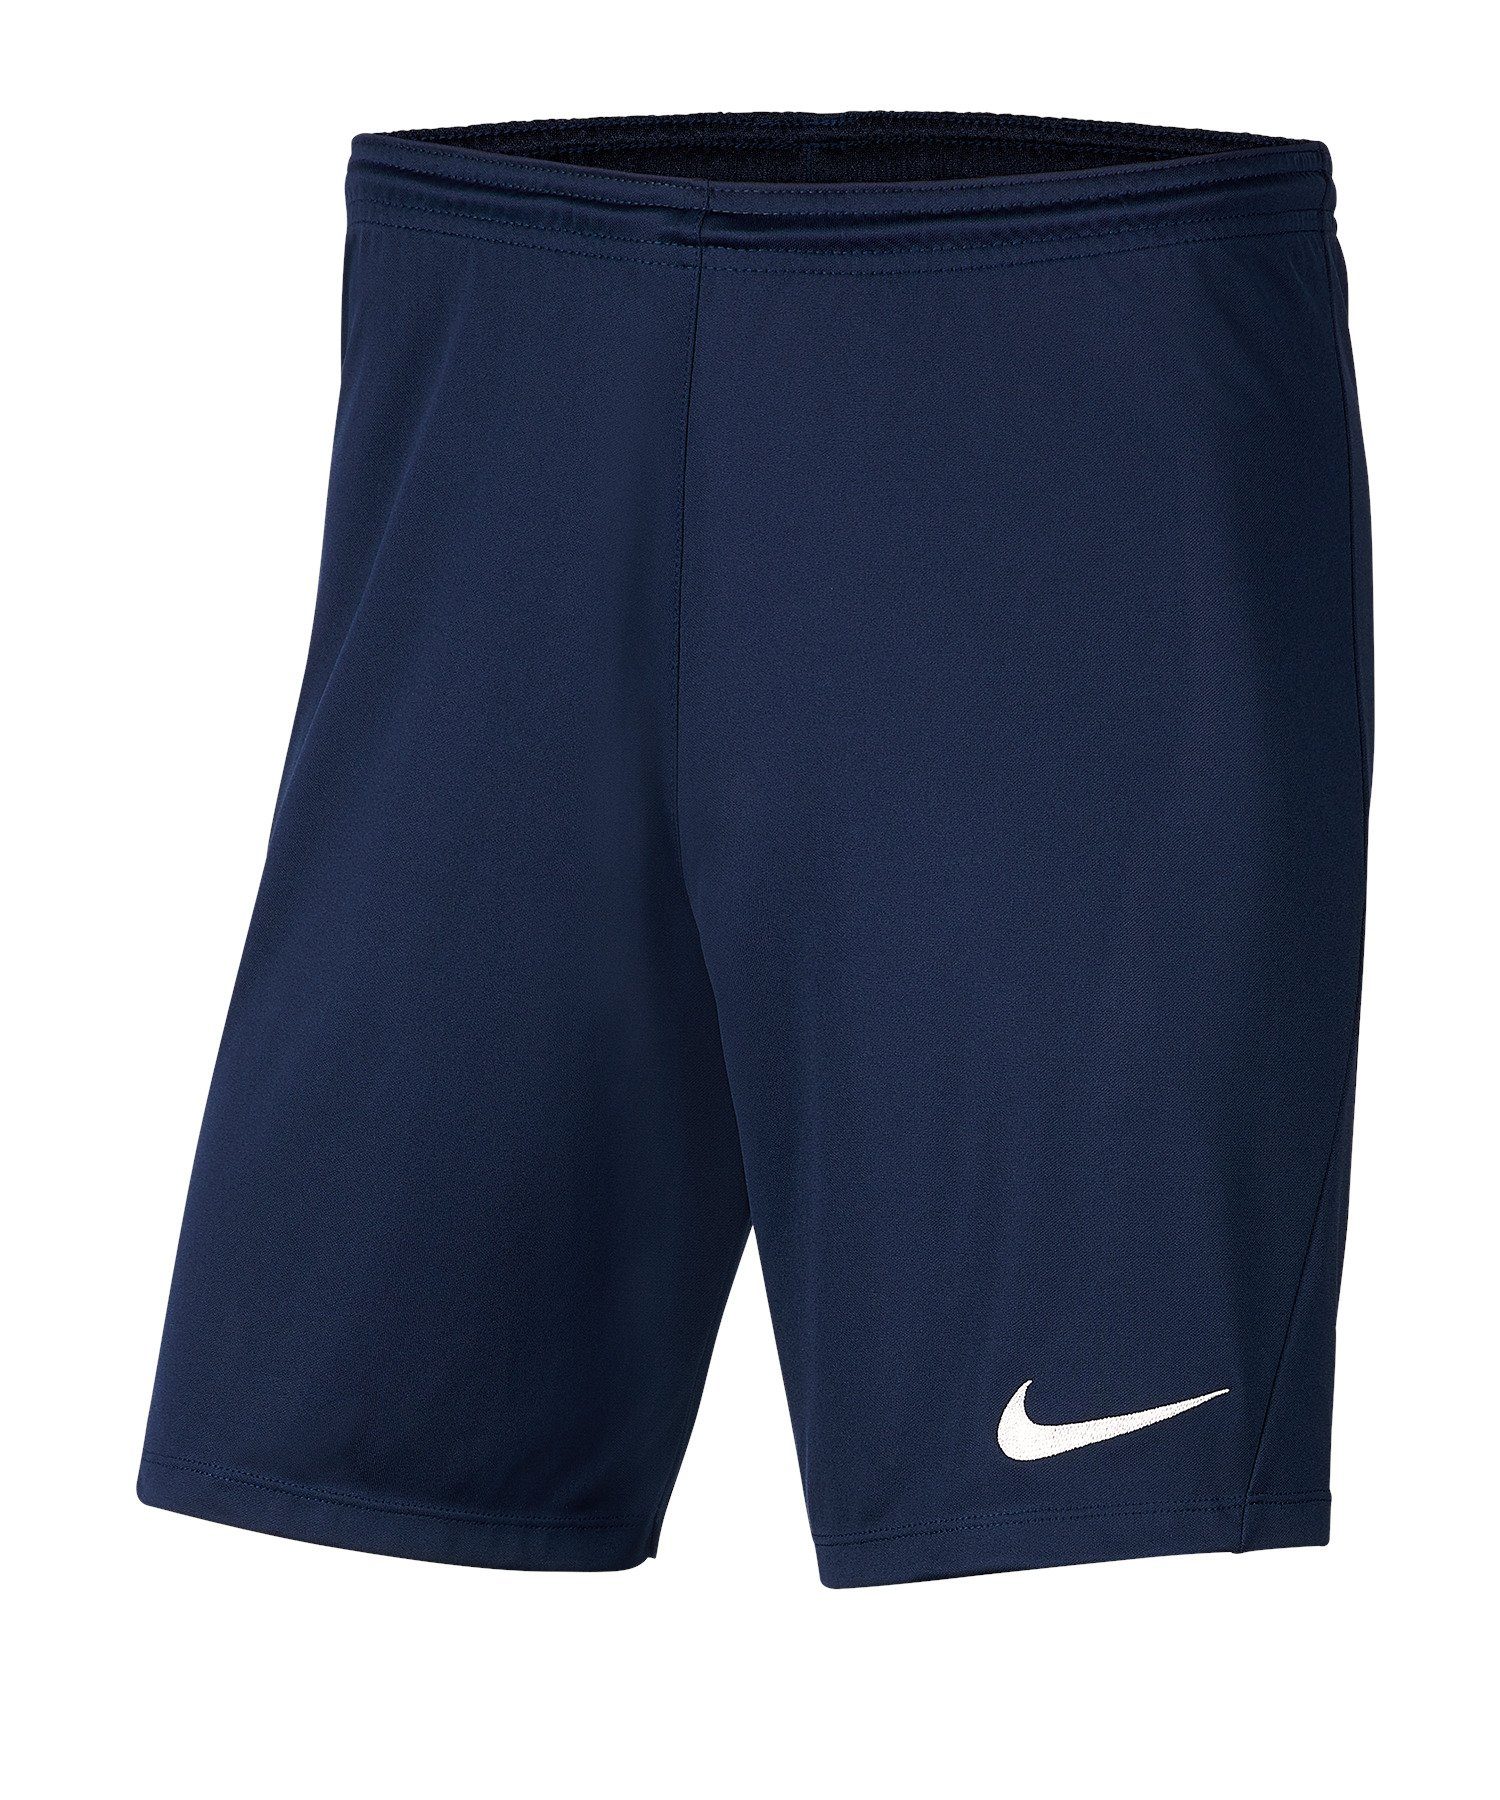 III Nike blaublau Sporthose Short Park